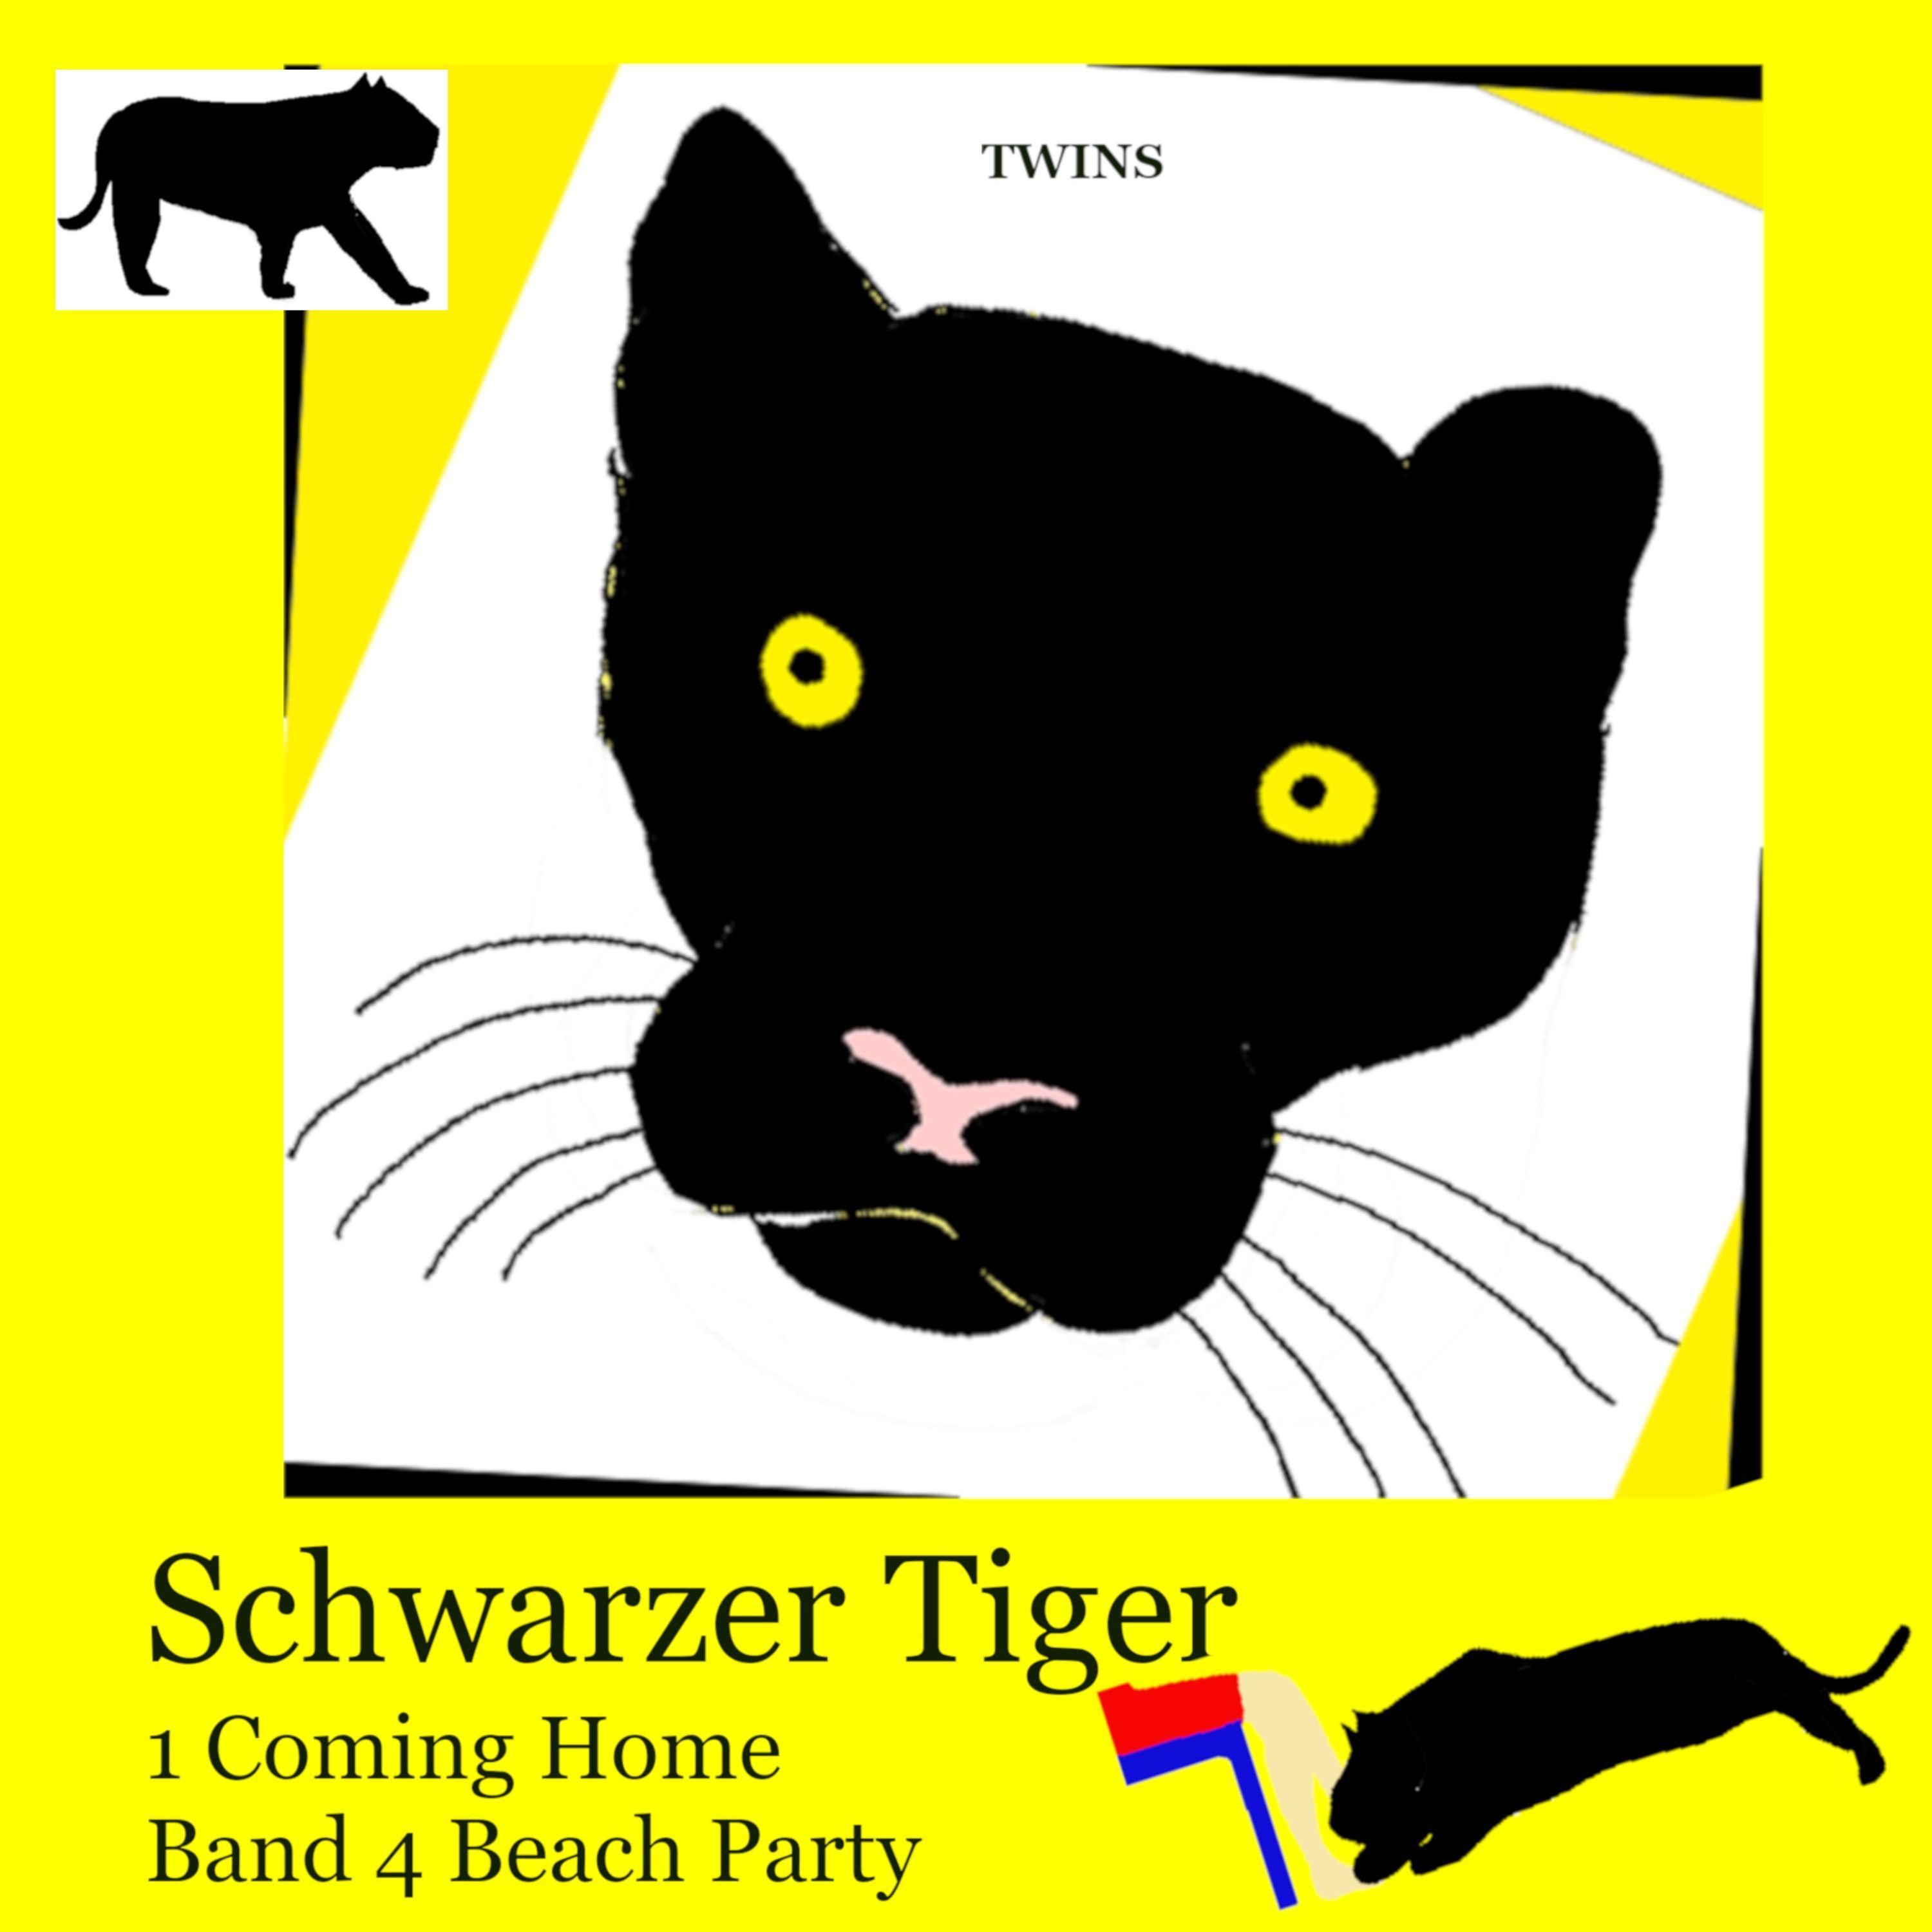 Schwarzer Tiger - Schwarzer Tiger 1 Coming Home